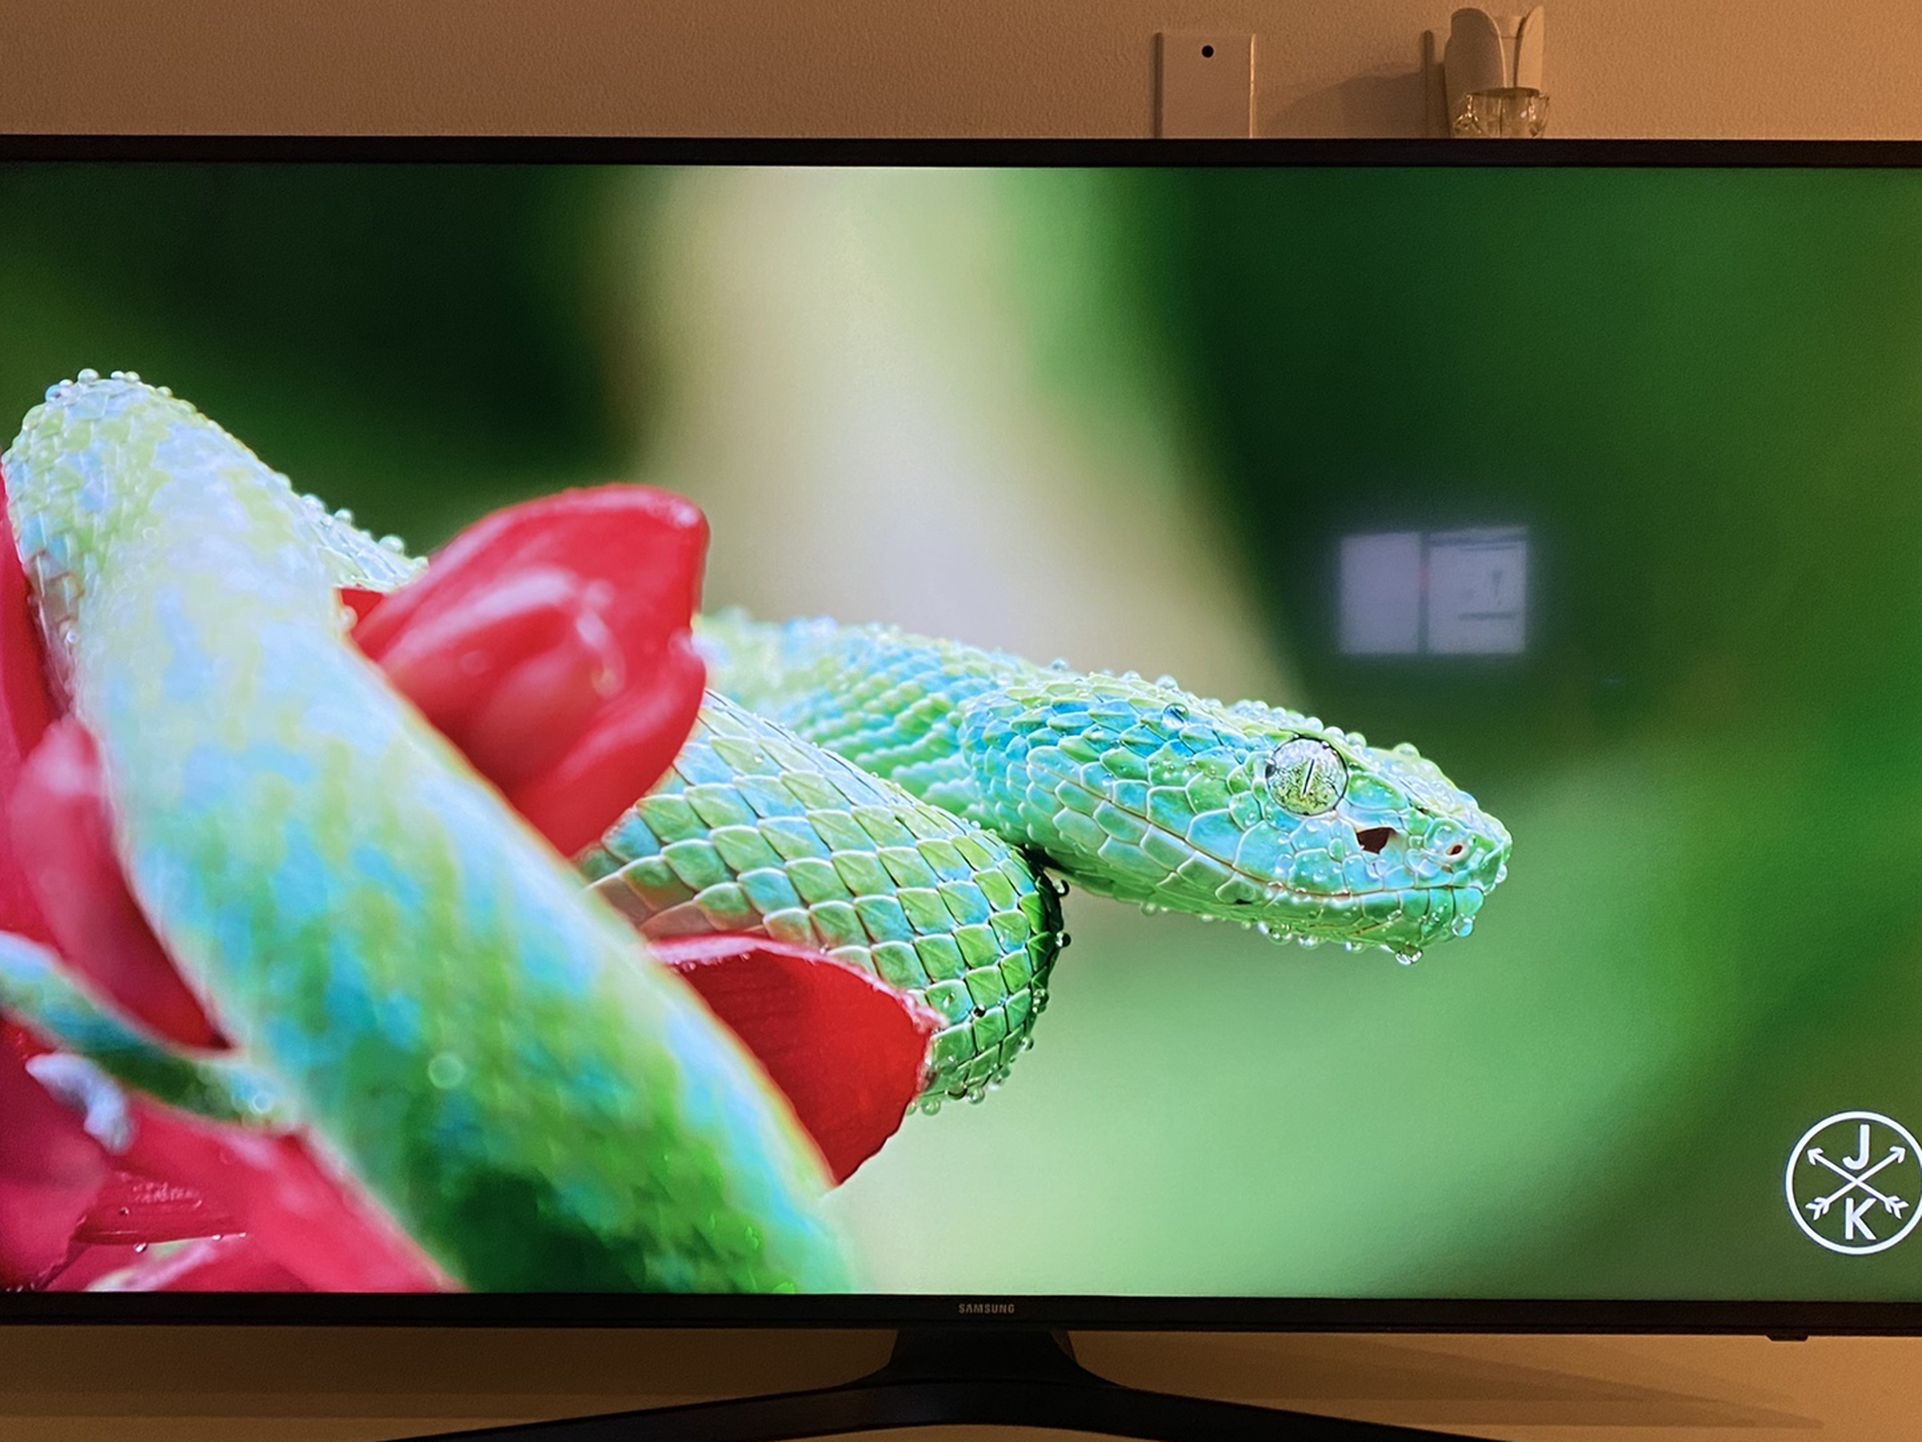 Samsung 4K HDR Smart TV